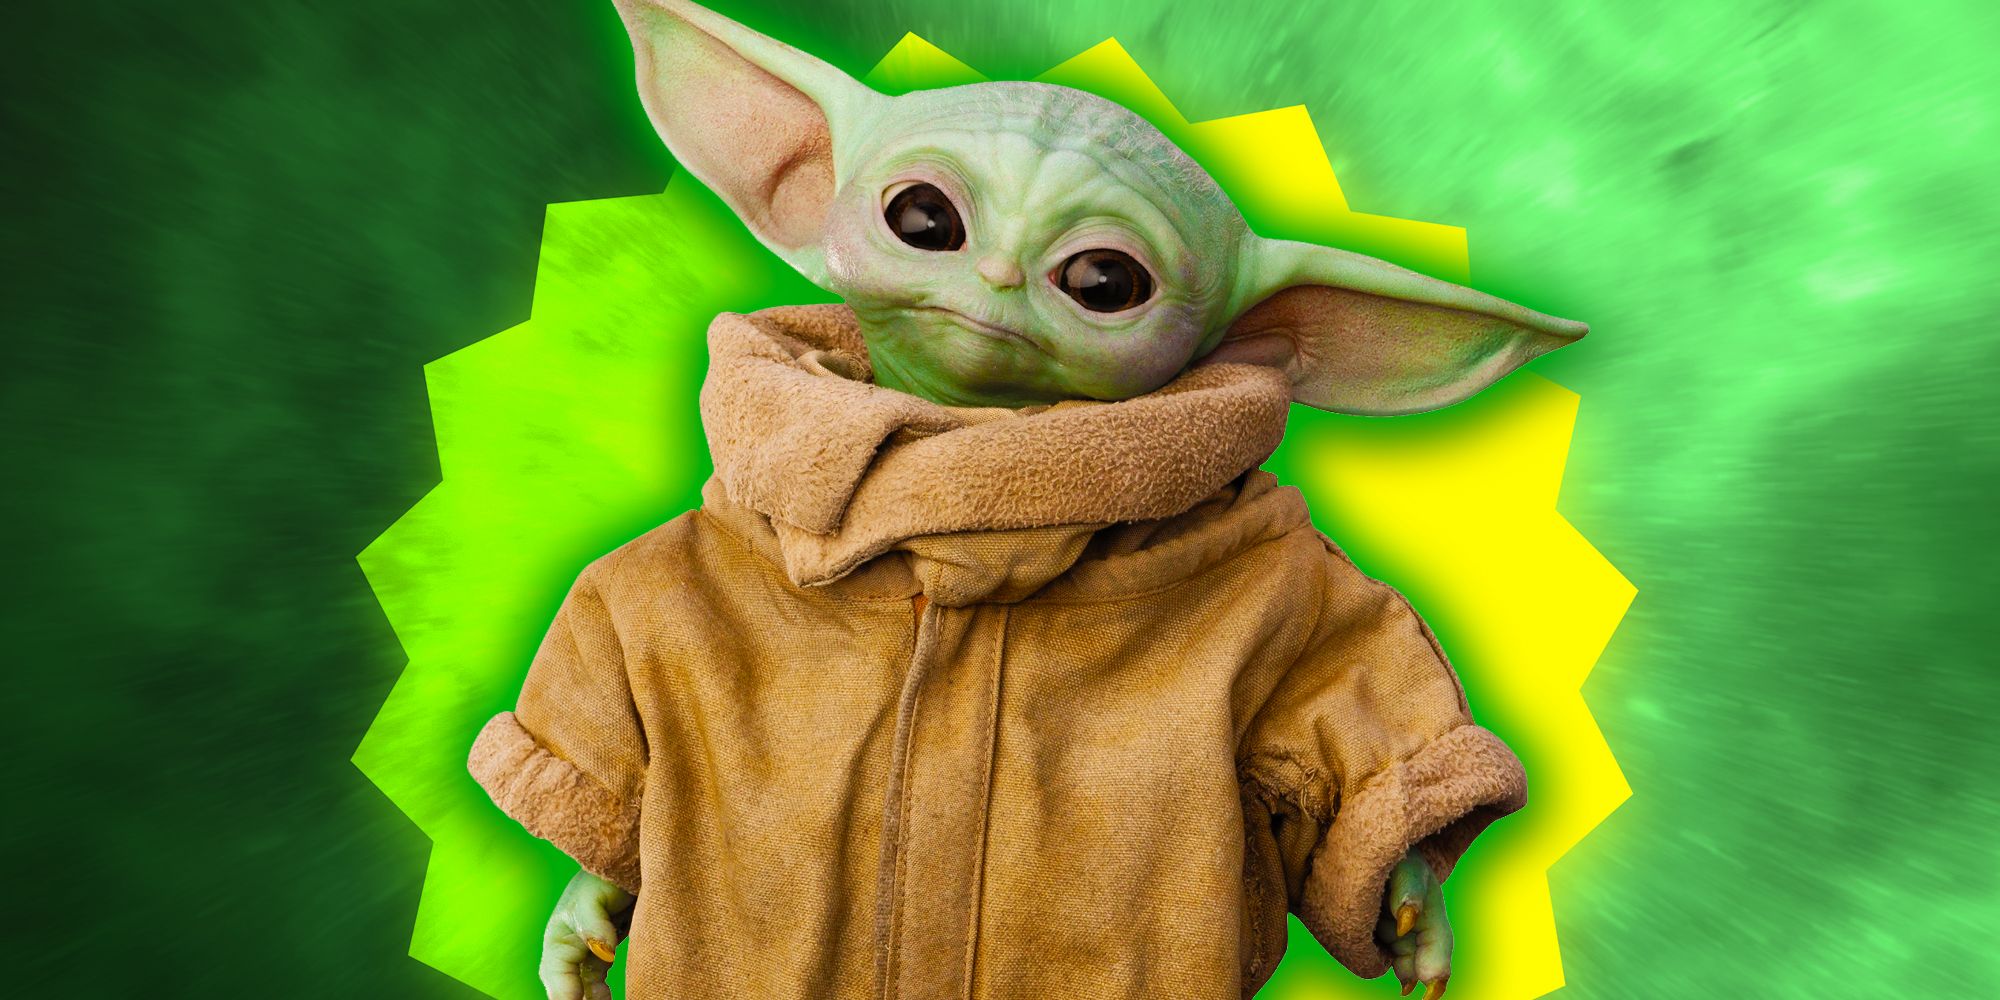 Star Wars presentó en secreto a Baby Yoda hace 22 años... y nadie se dio cuenta